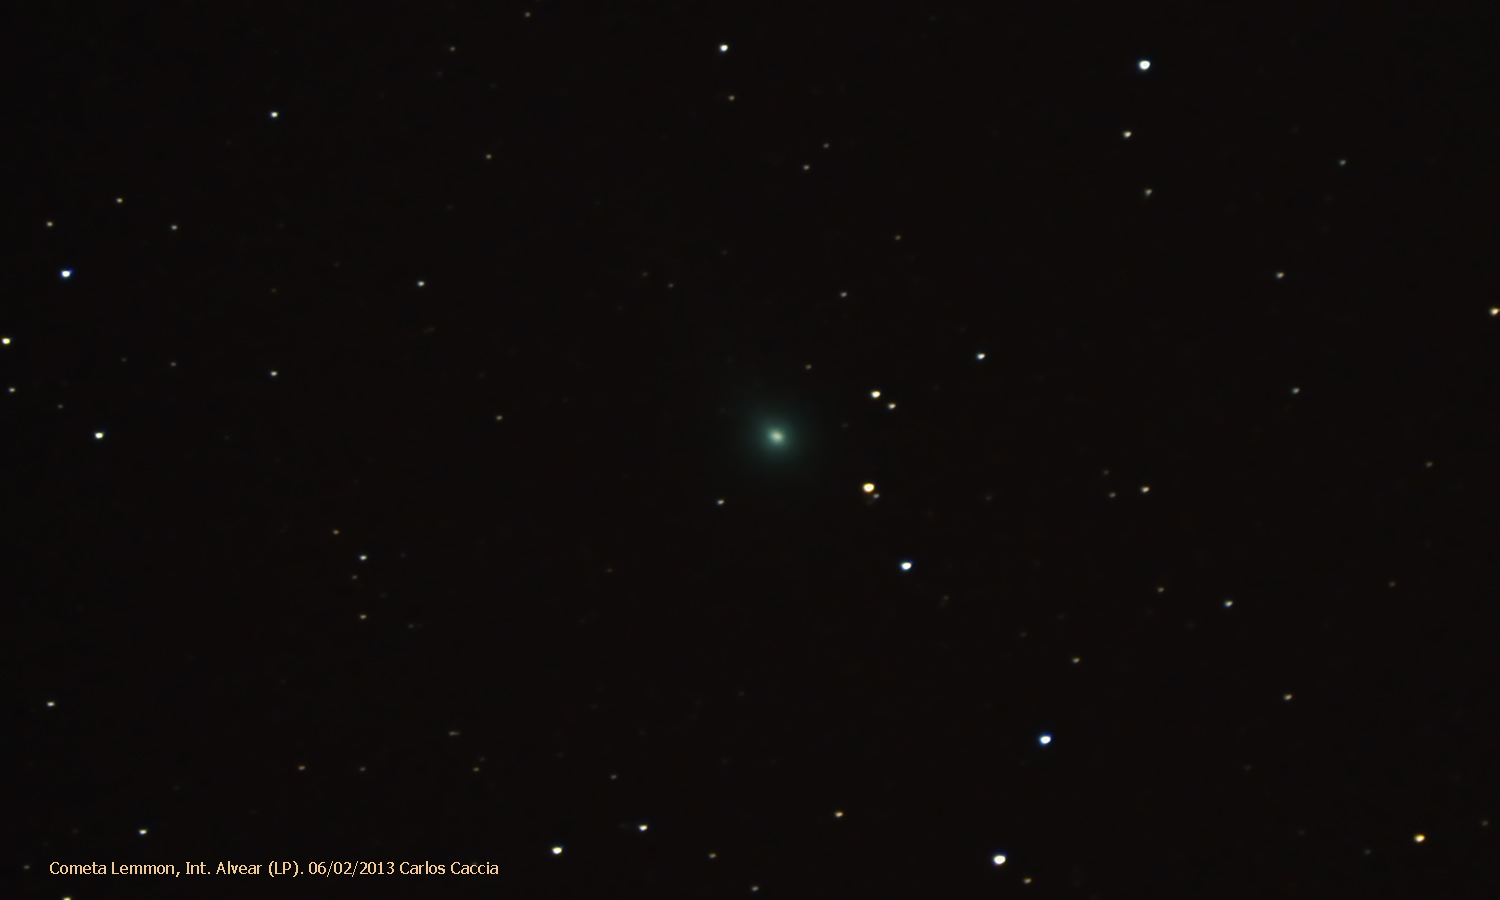 Cometa-Lemmon-C-2012-F6.jpg.9d96e64e59f1